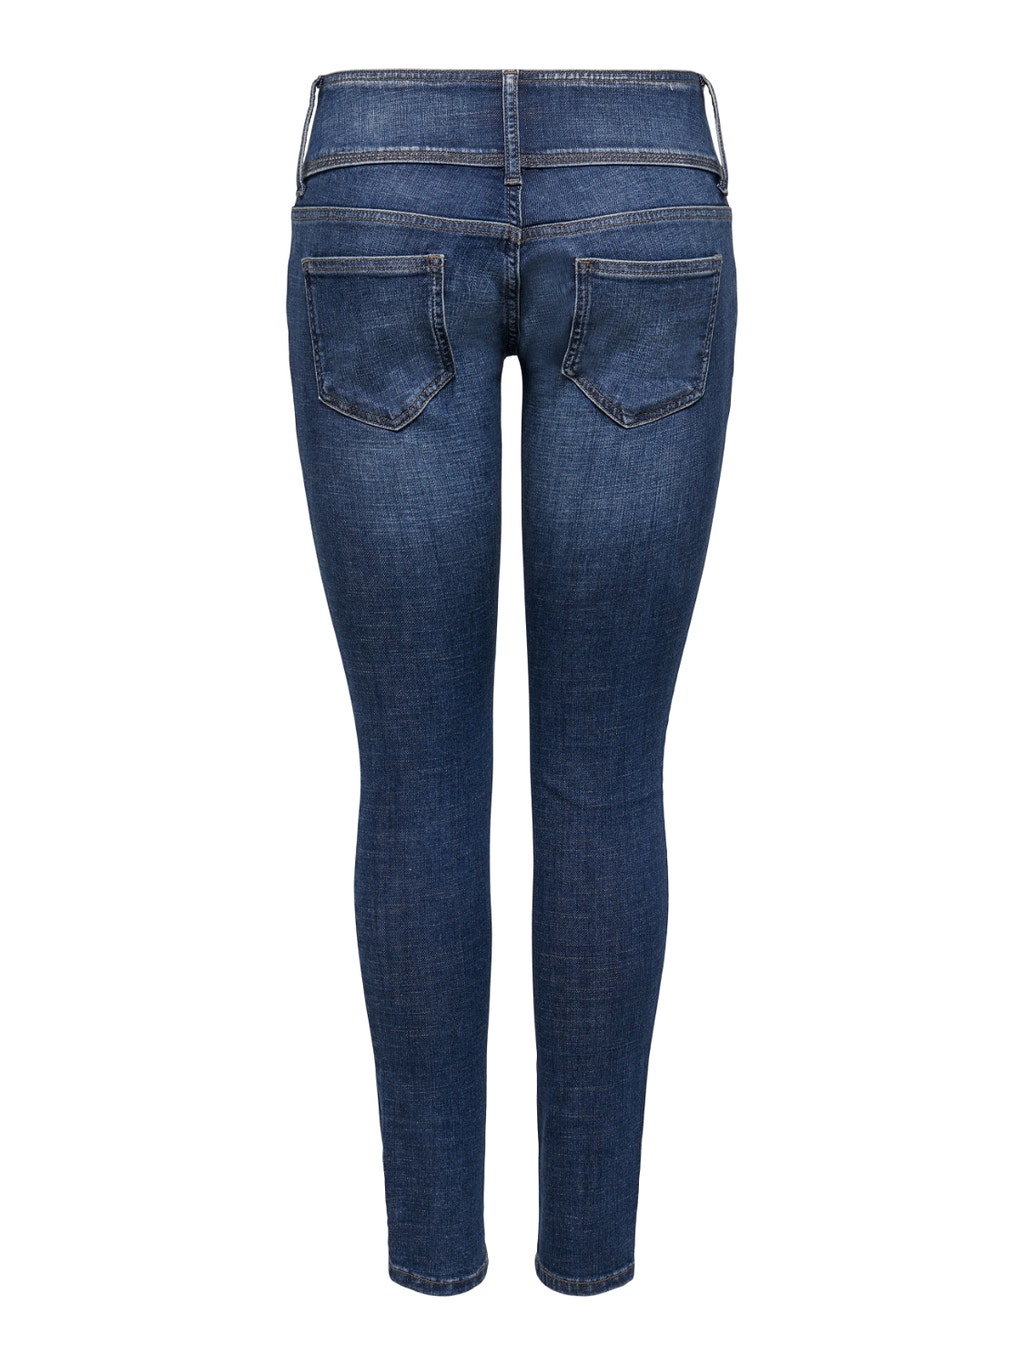 ONLAnemone low Slim fit jeans z 20% zniżki | ONLY®